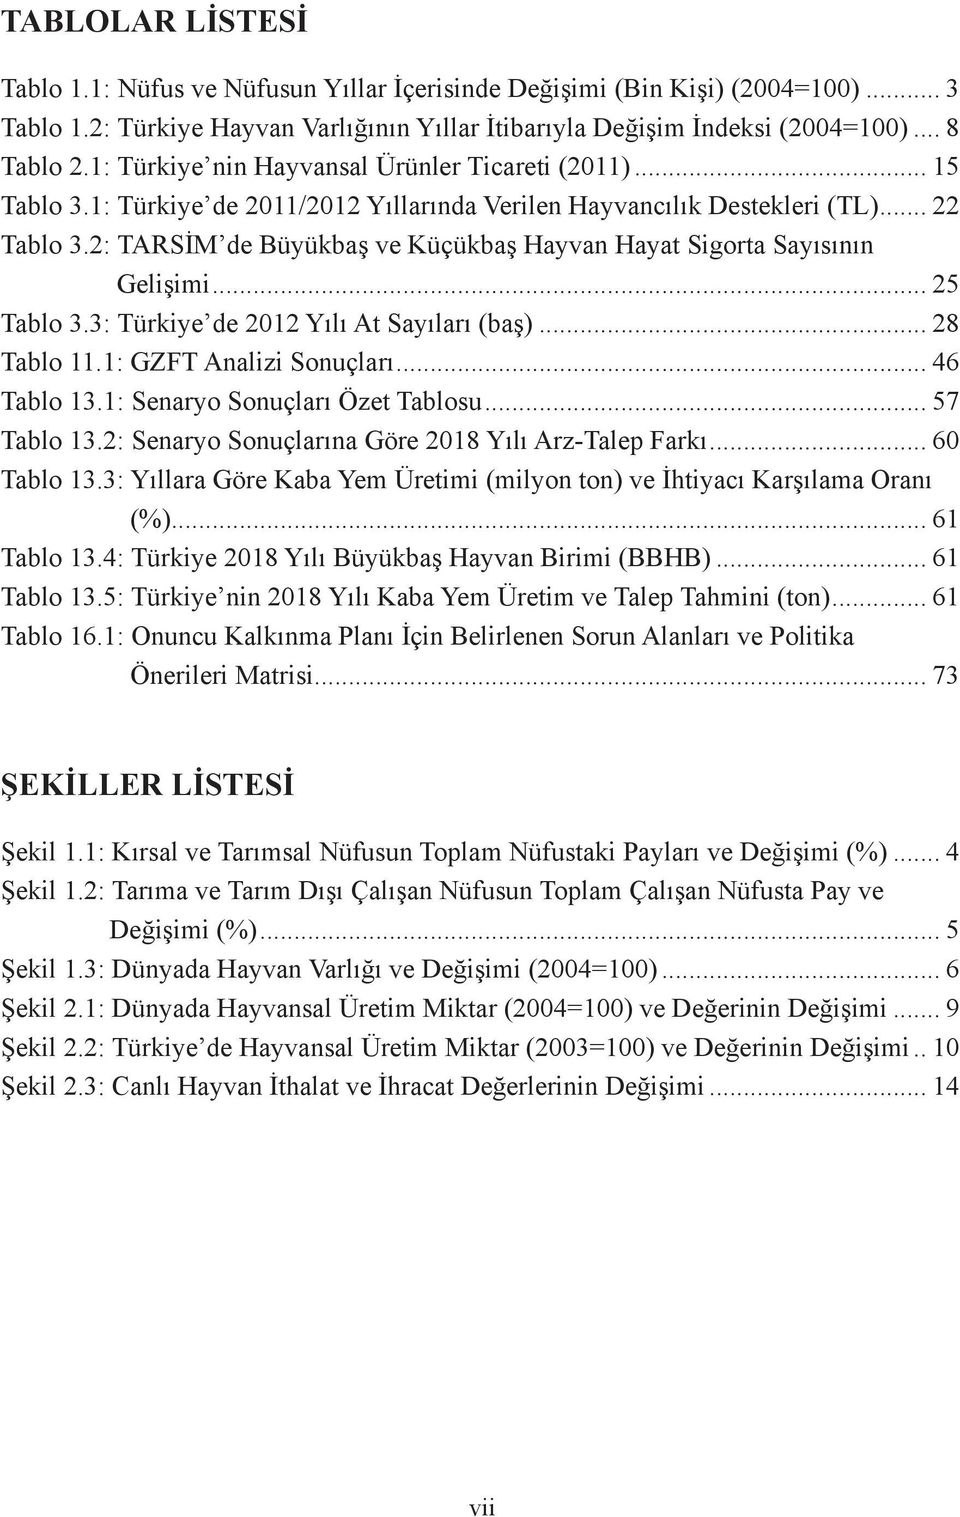 2: TARSİM de Büyükbaş ve Küçükbaş Hayvan Hayat Sigorta Sayısının Gelişimi... 25 Tablo 3.3: Türkiye de 2012 Yılı At Sayıları (baş)... 28 Tablo 11.1: GZFT Analizi Sonuçları... 46 Tablo 13.